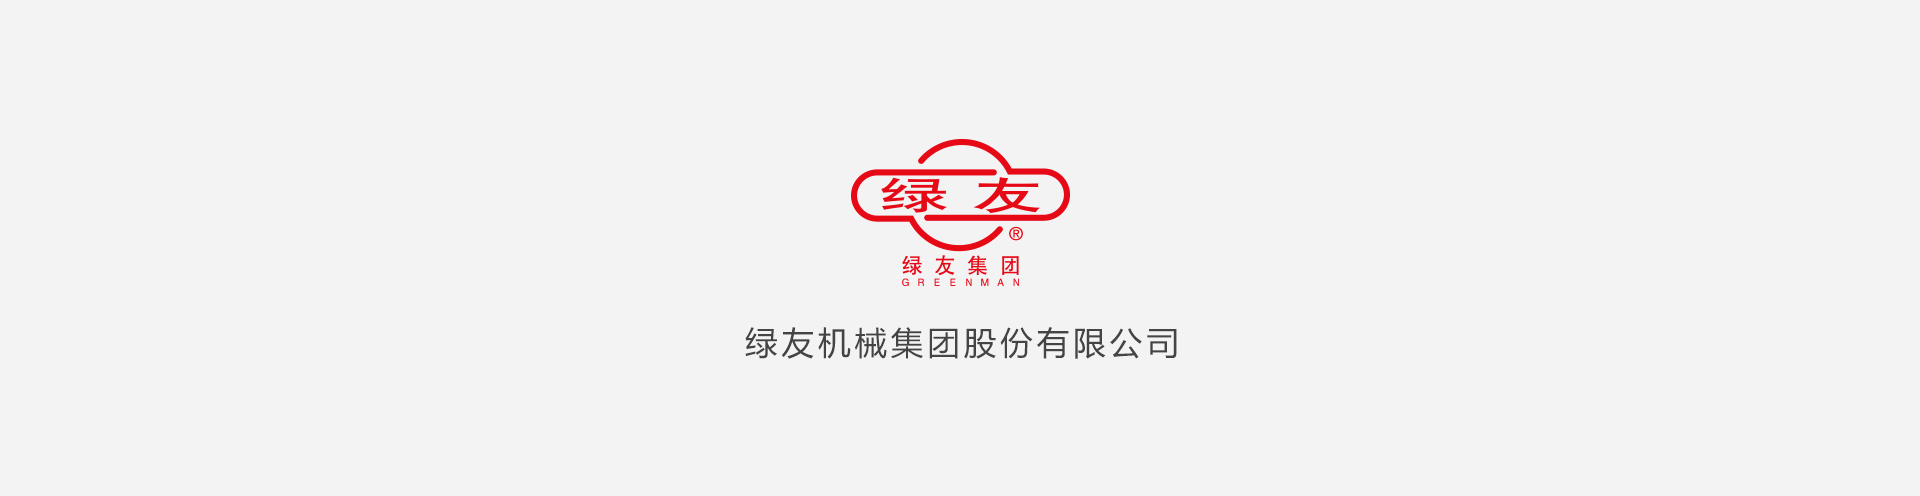 HQ环球体育·(中国)官方网站